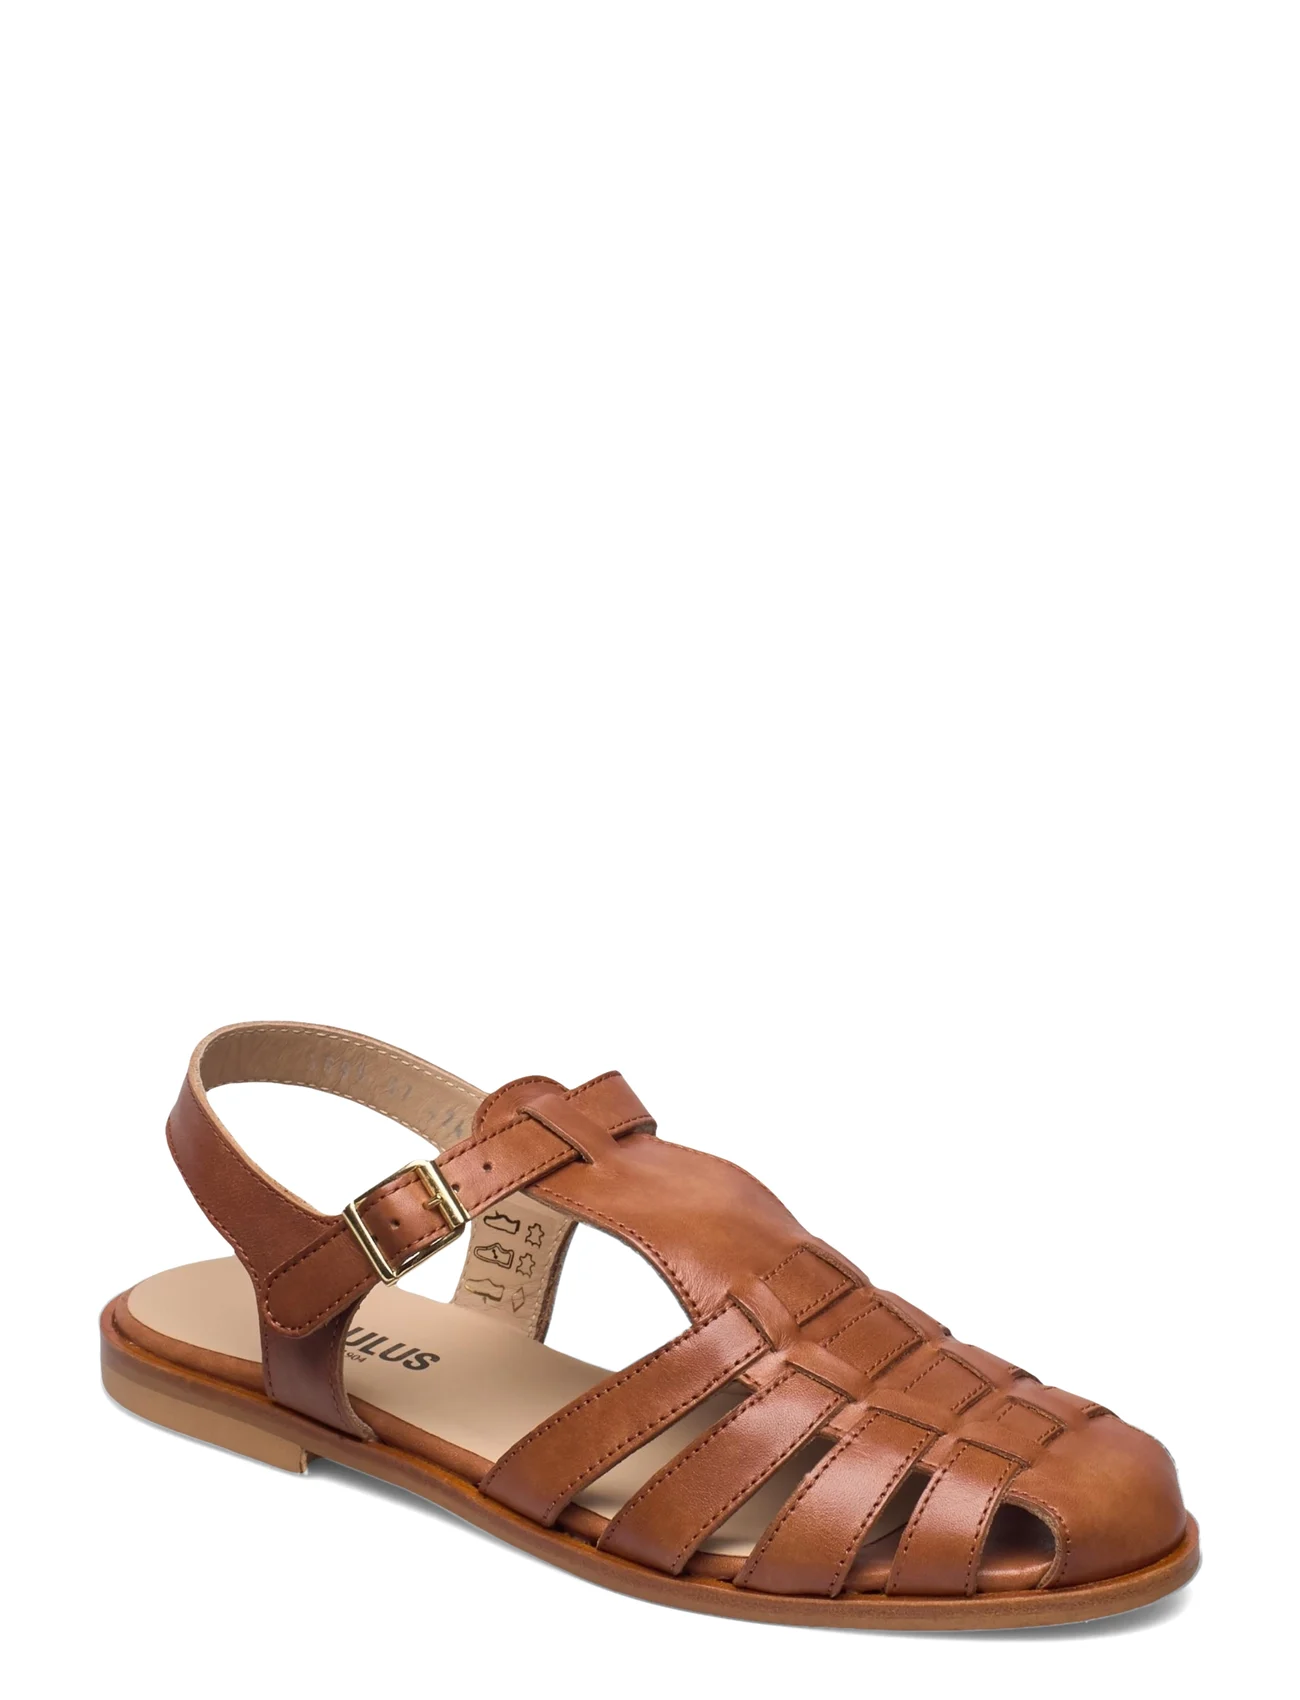 ANGULUS - Sandals - flat - closed toe - op - flade sandaler - 1789 tan - 0